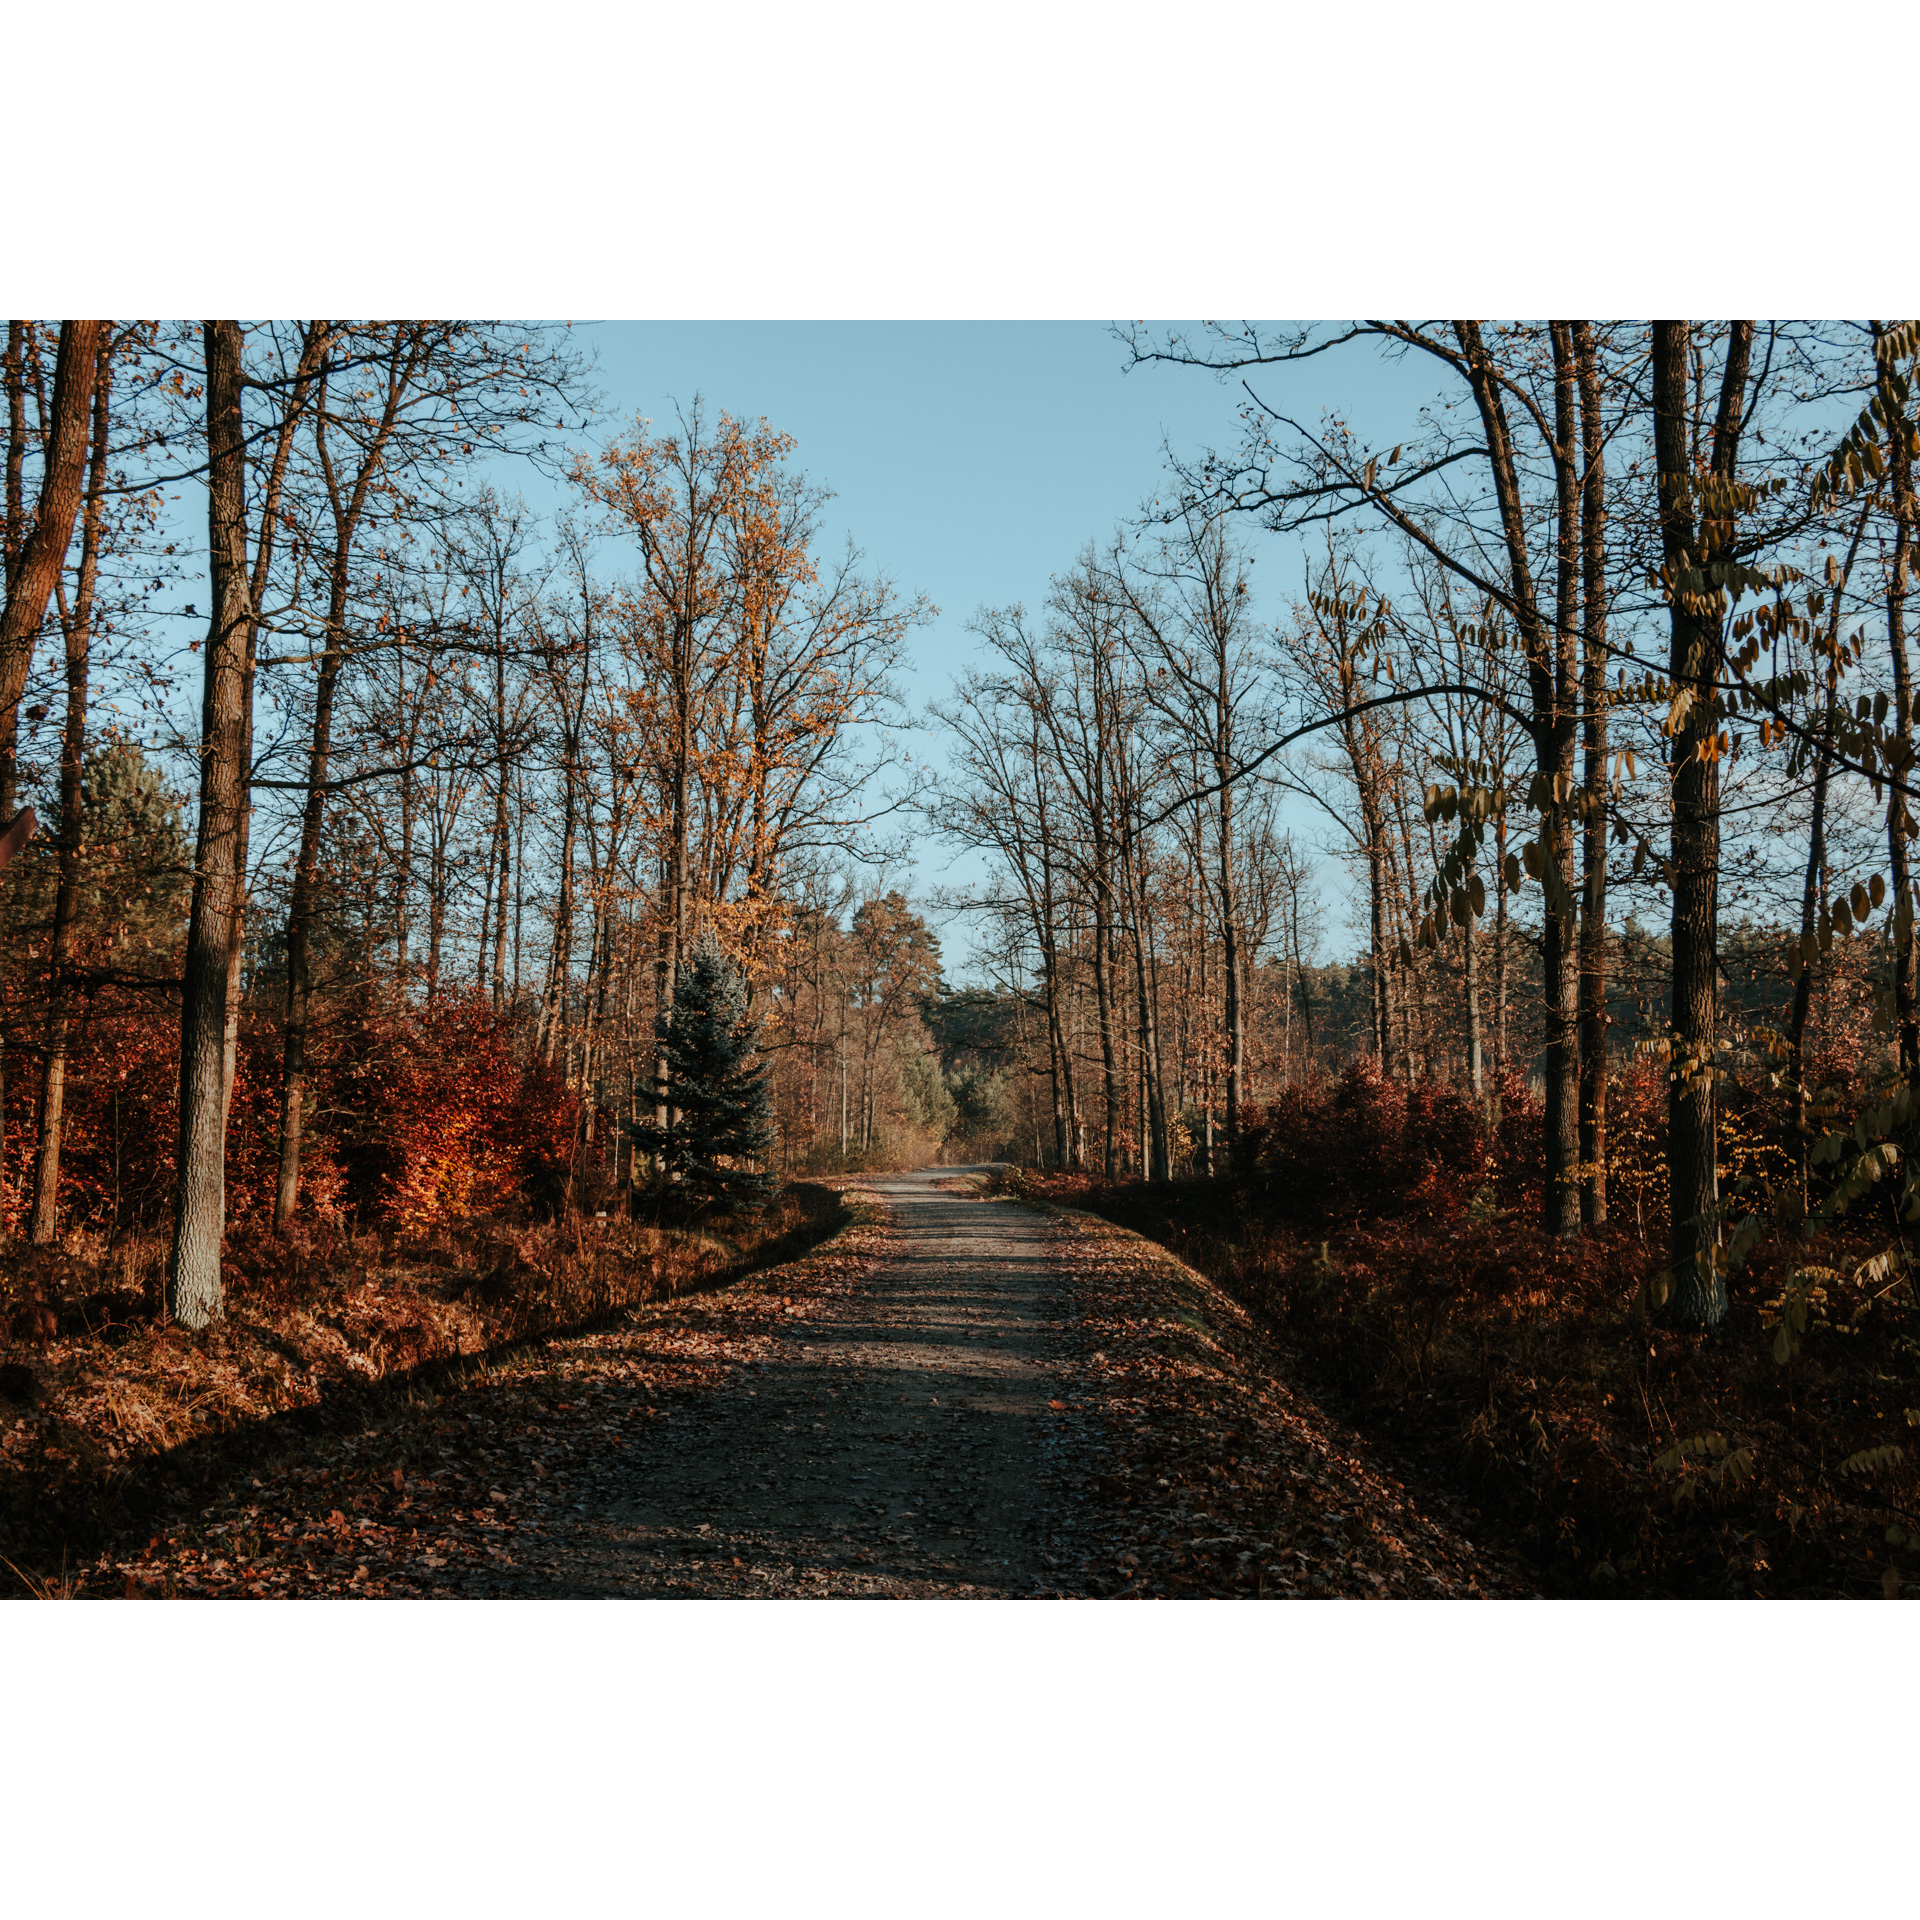 Droga gruntowa prowadząca przez jesienny las z pomarańczowymi liśćmi na drzewach i podłożu